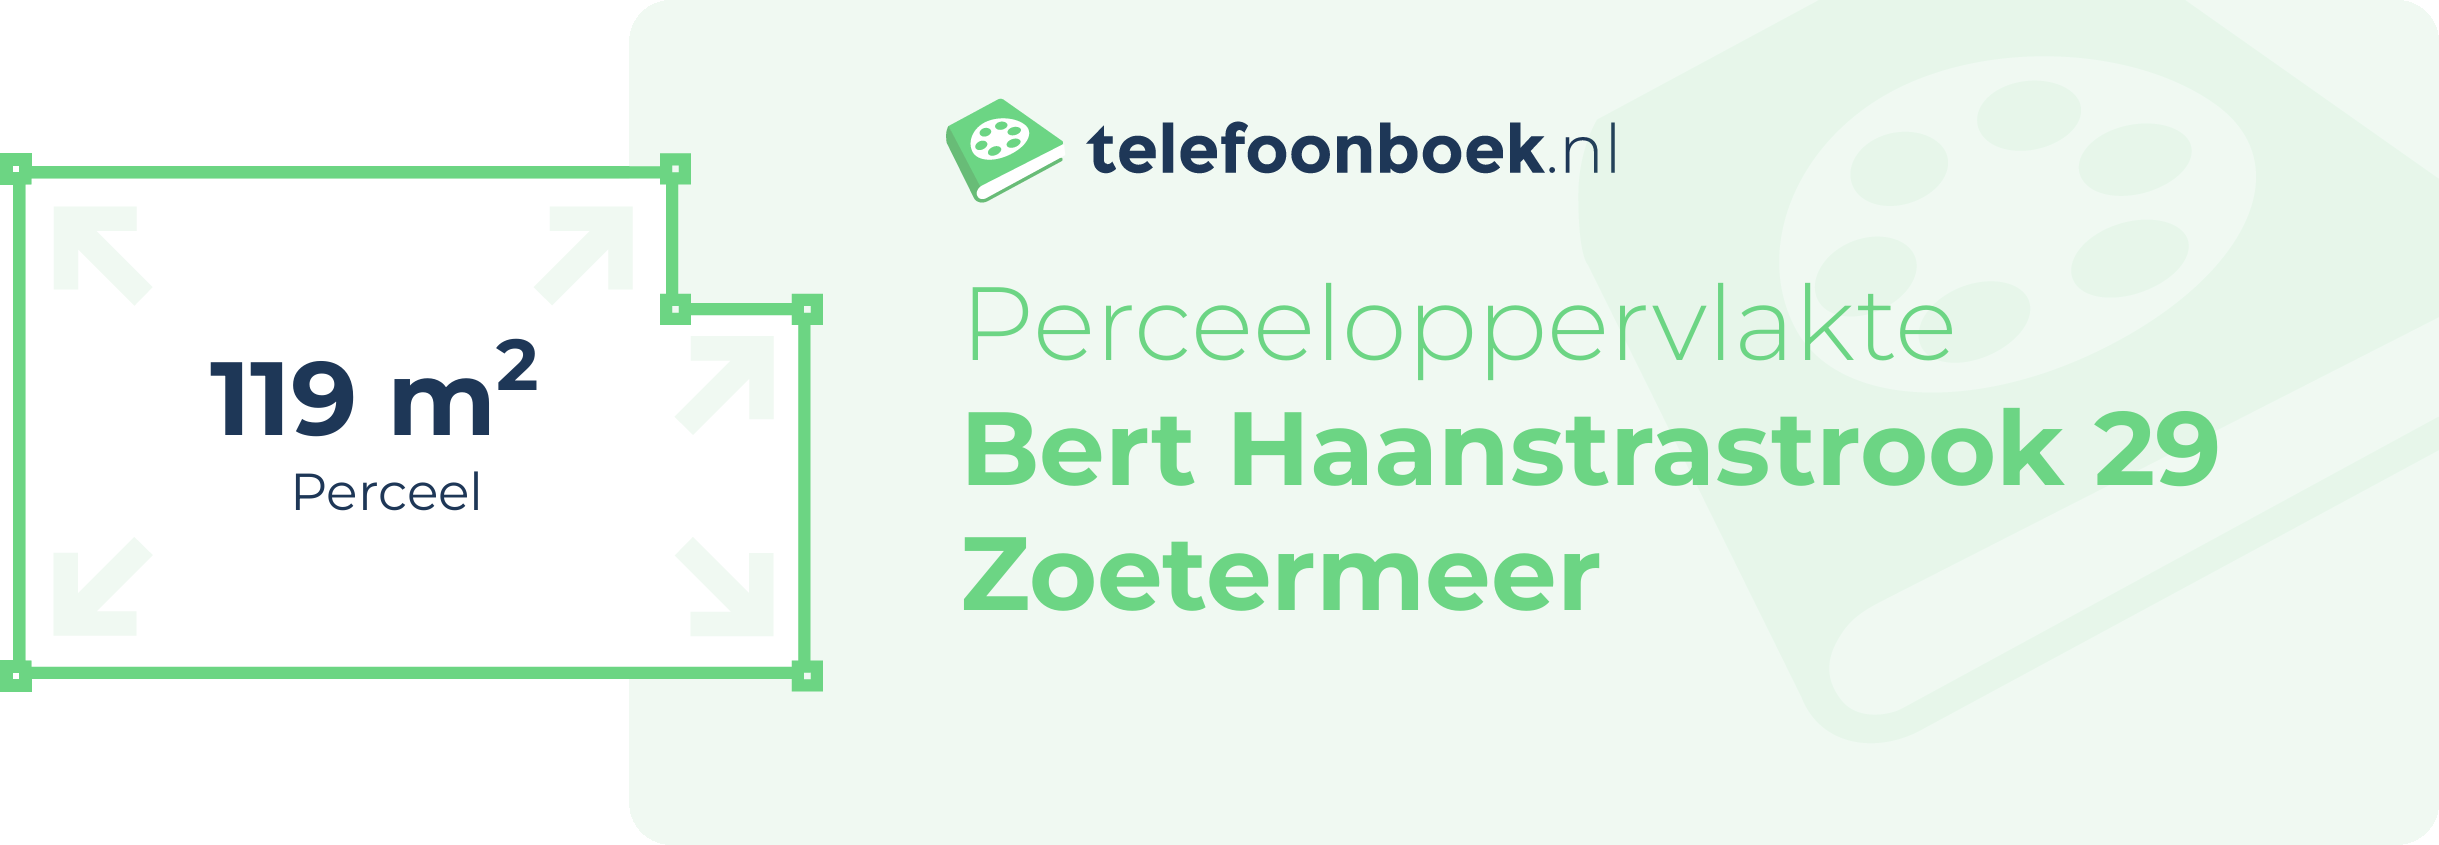 Perceeloppervlakte Bert Haanstrastrook 29 Zoetermeer